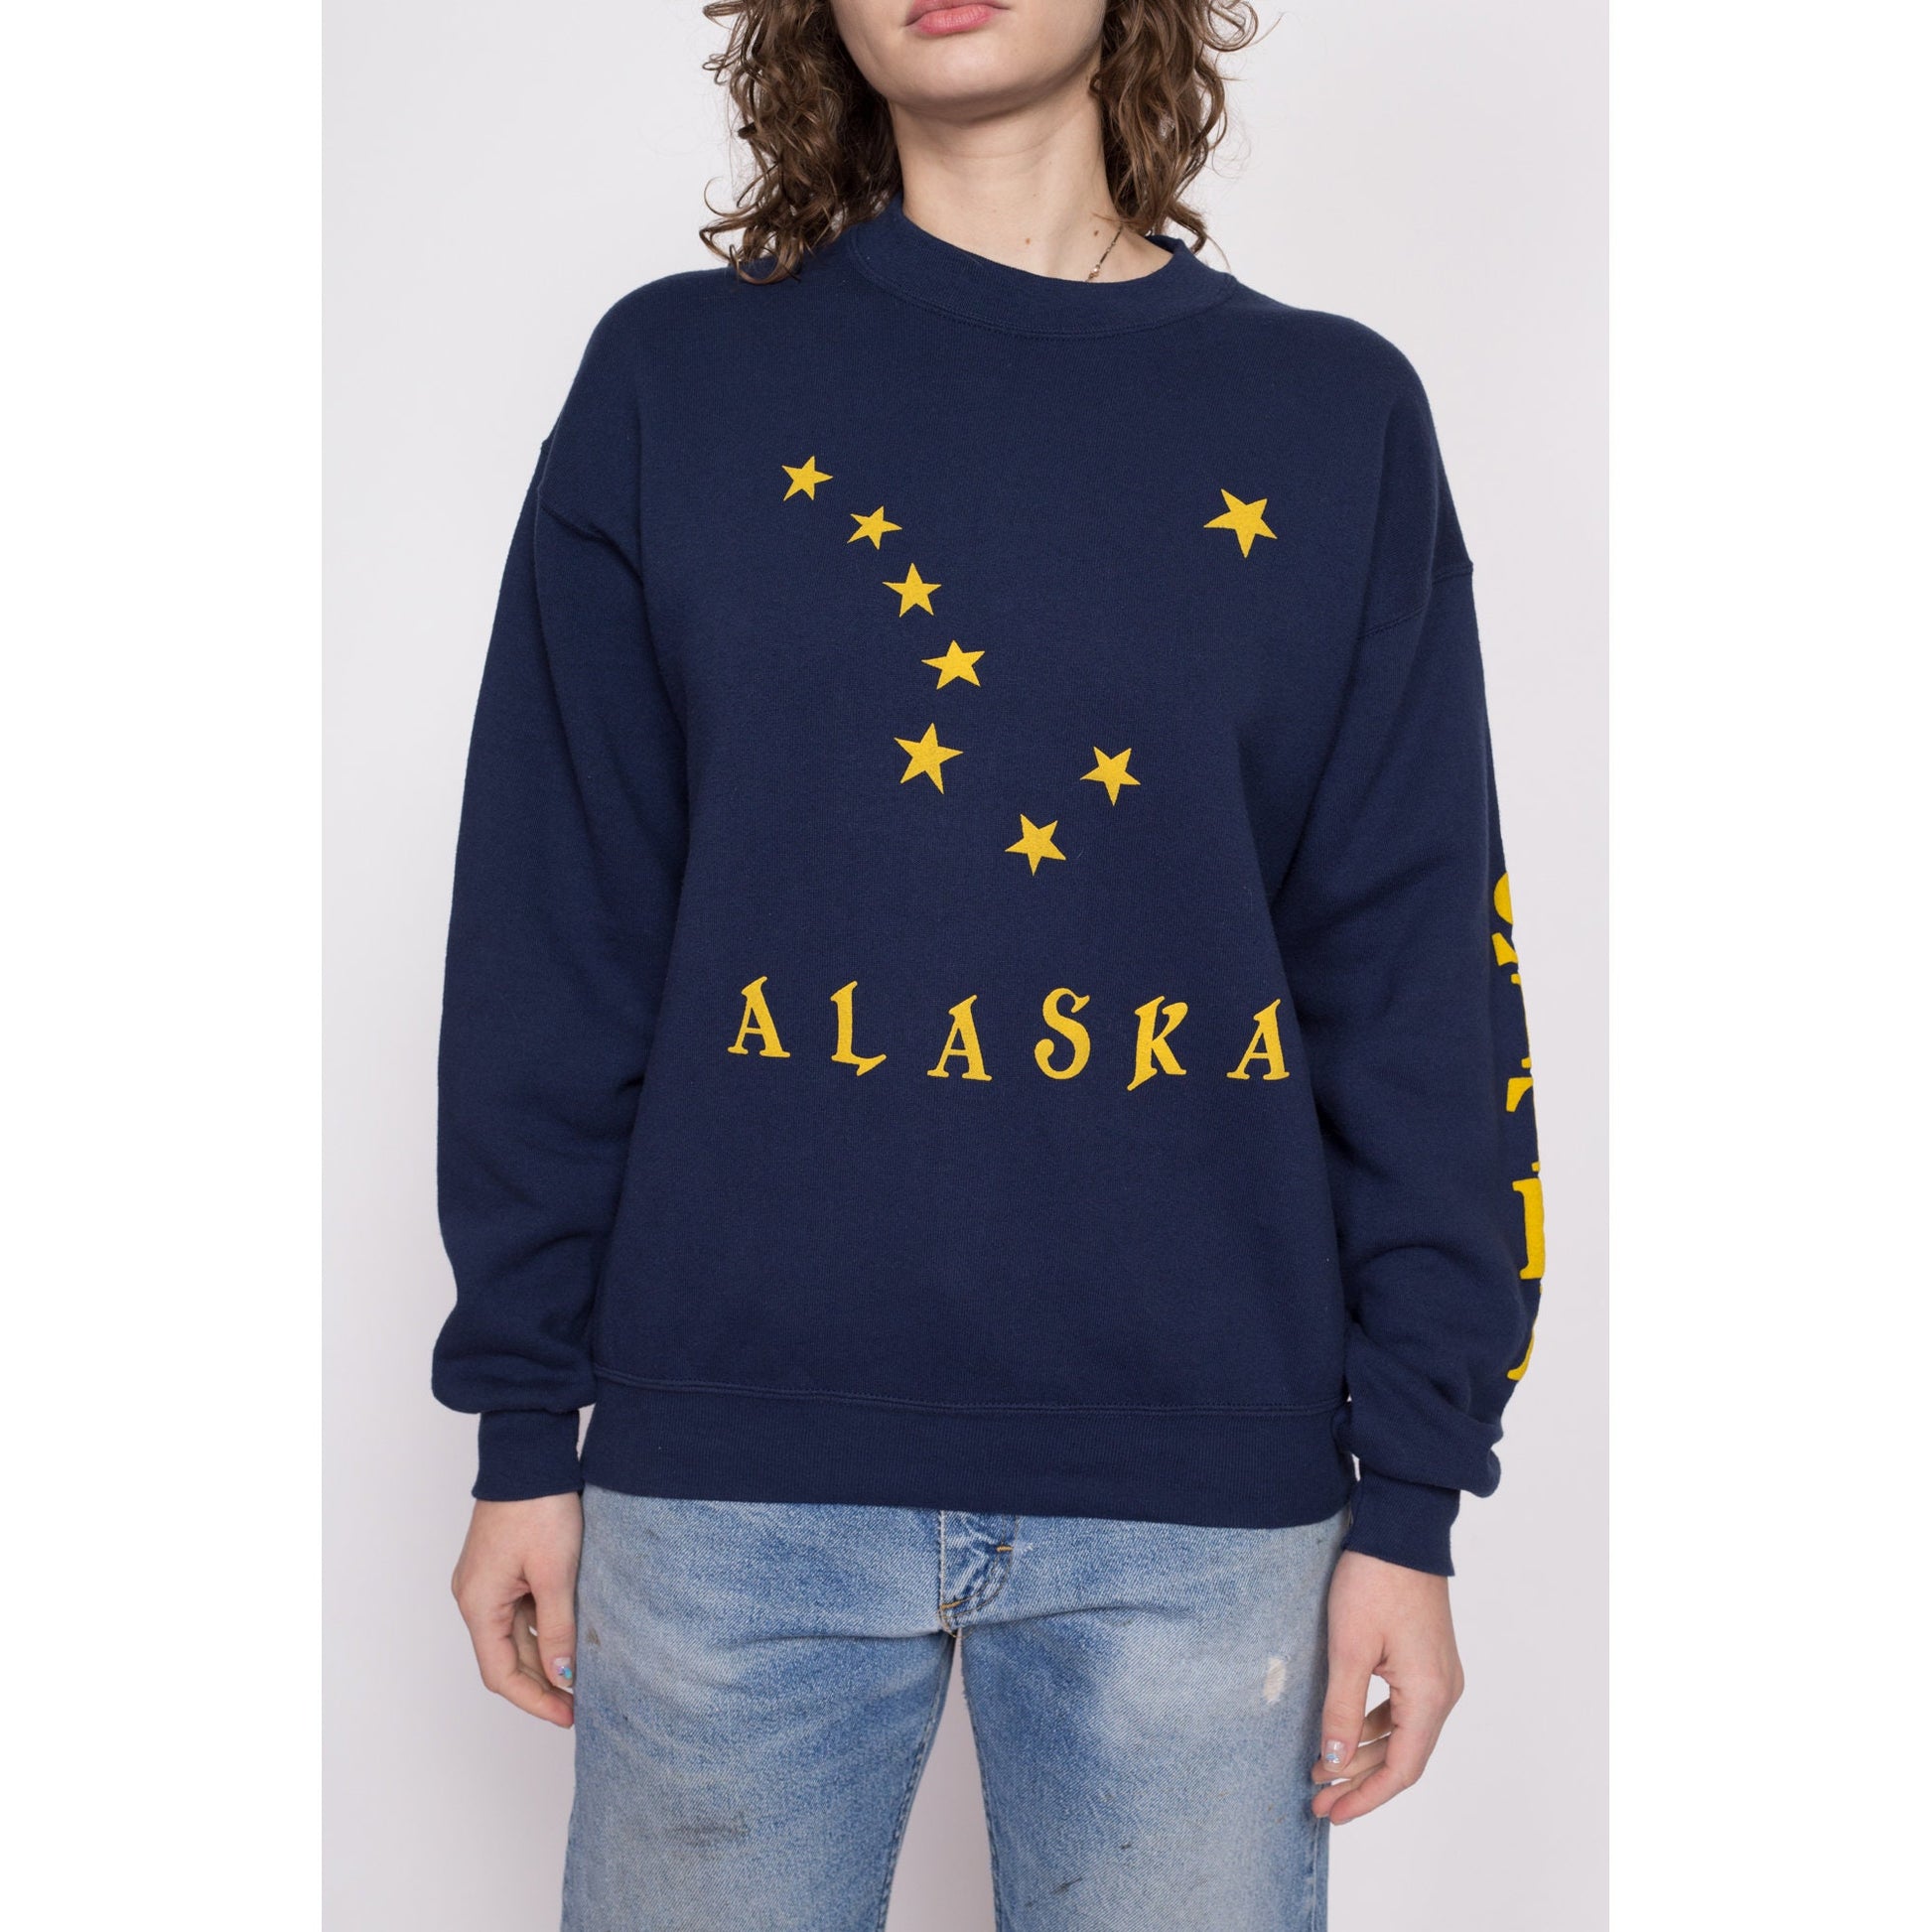 Vintage 90s Alaska Navy Blue Sweatshirt